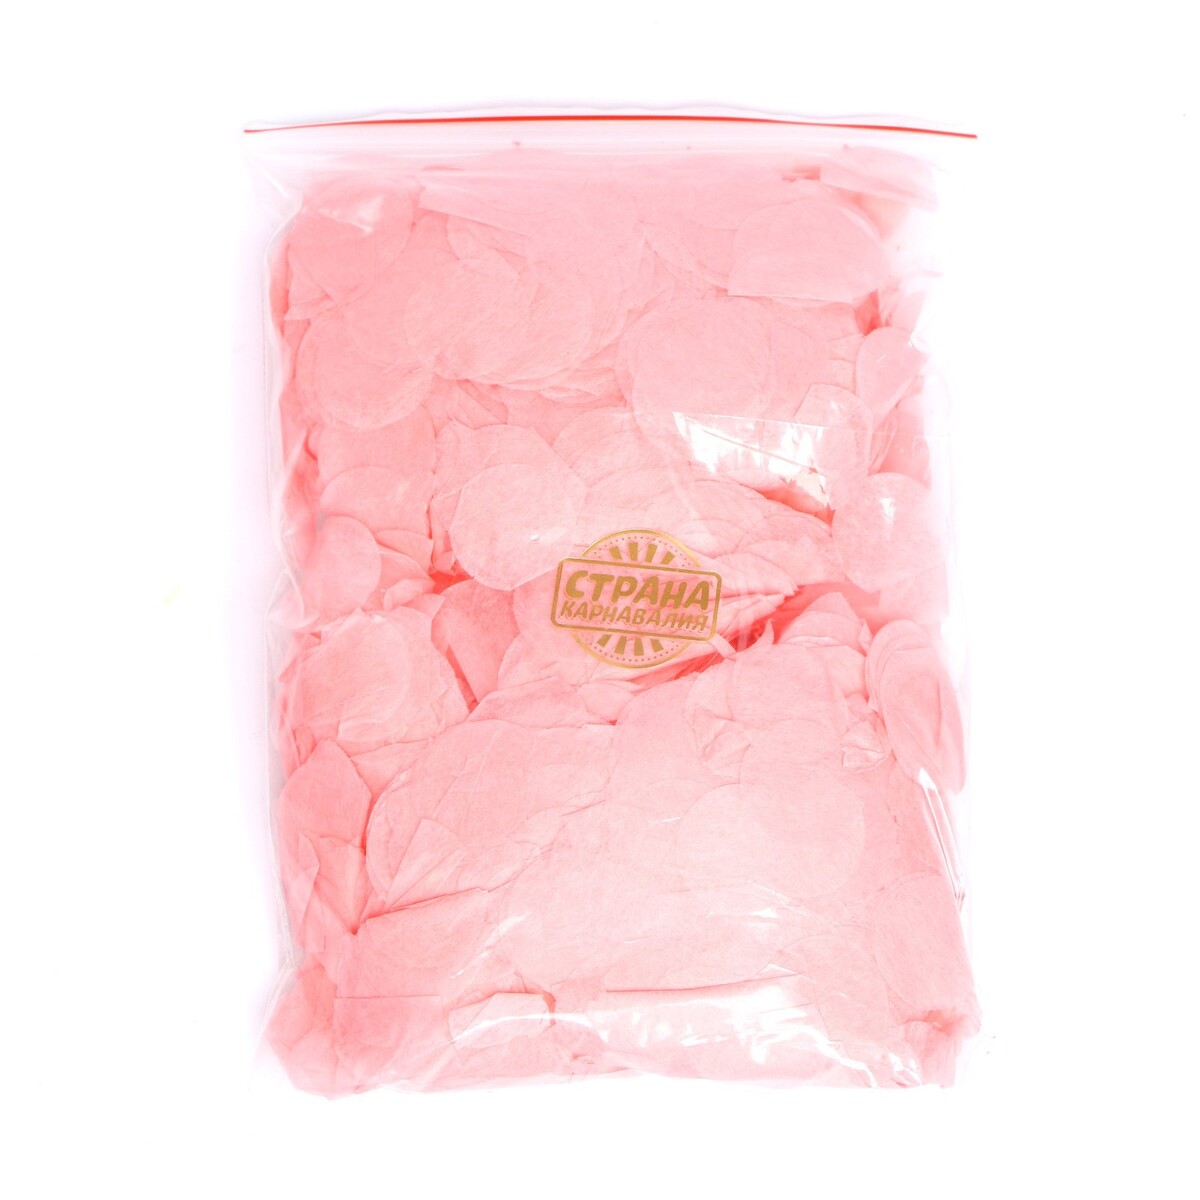 Наполнитель для шара, конфетти розовое, 100 г, 2,5 см конфетти для воздушного шара серебро металлик 20 г